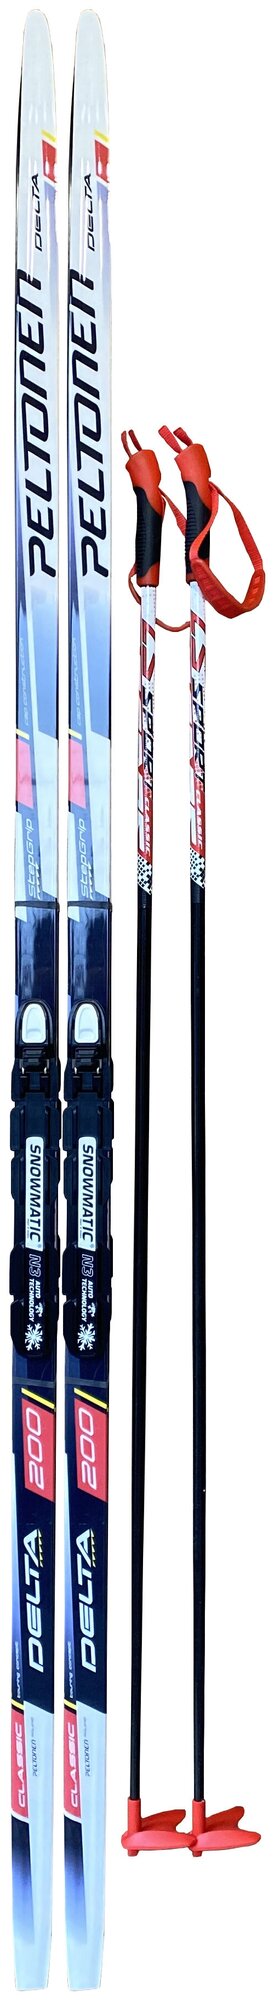 Лыжный комплект STC Delta 200см STEP NNN (лыжи + палки(145) + крепления)